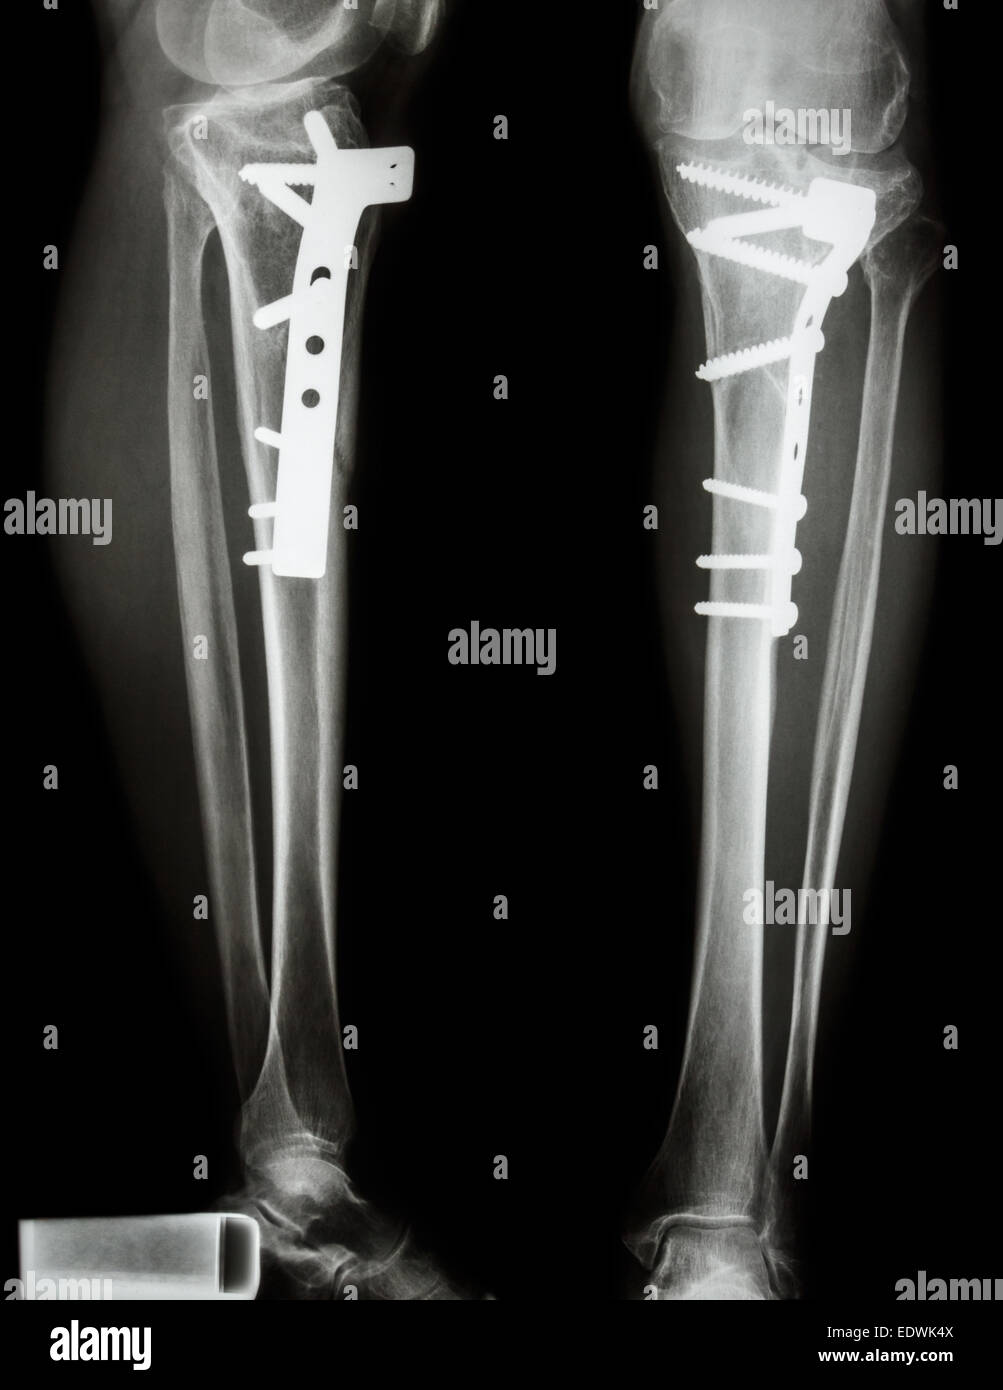 Fractura del hueso de la pierna (tibia). Fue operado y fija interna de chapa&tornillo Foto de stock